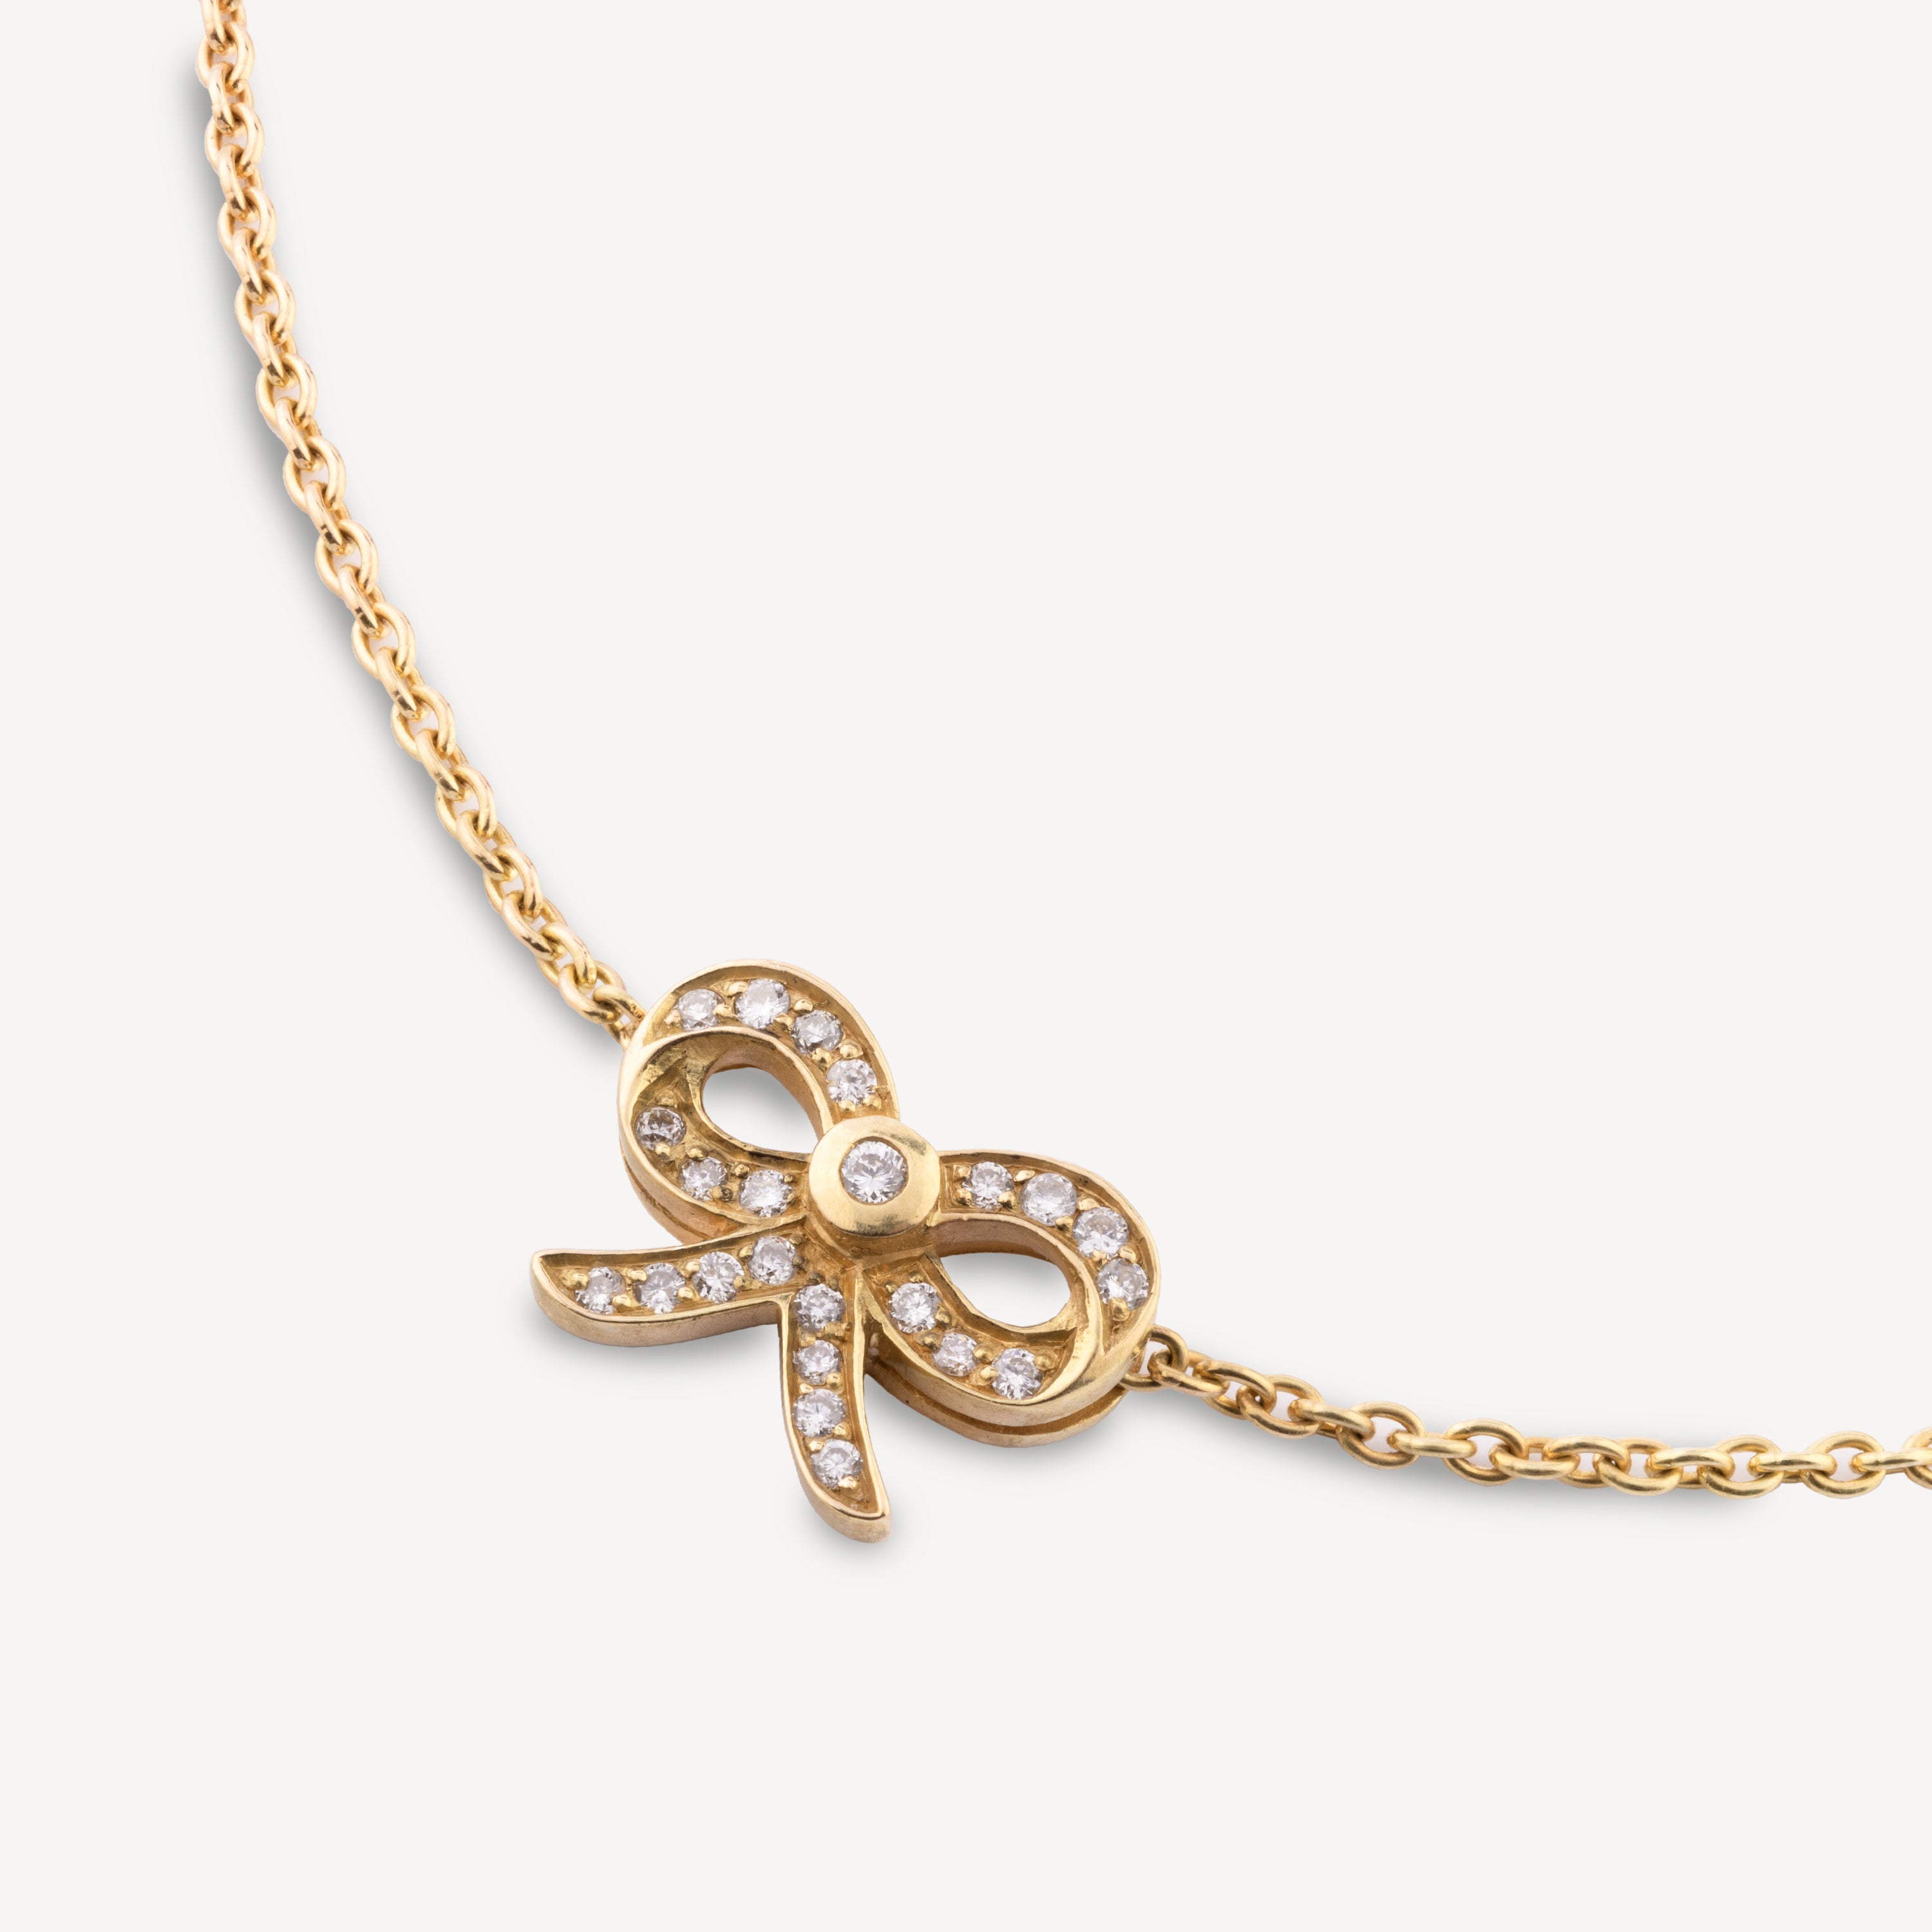 Gold mini diamond knot bracelet